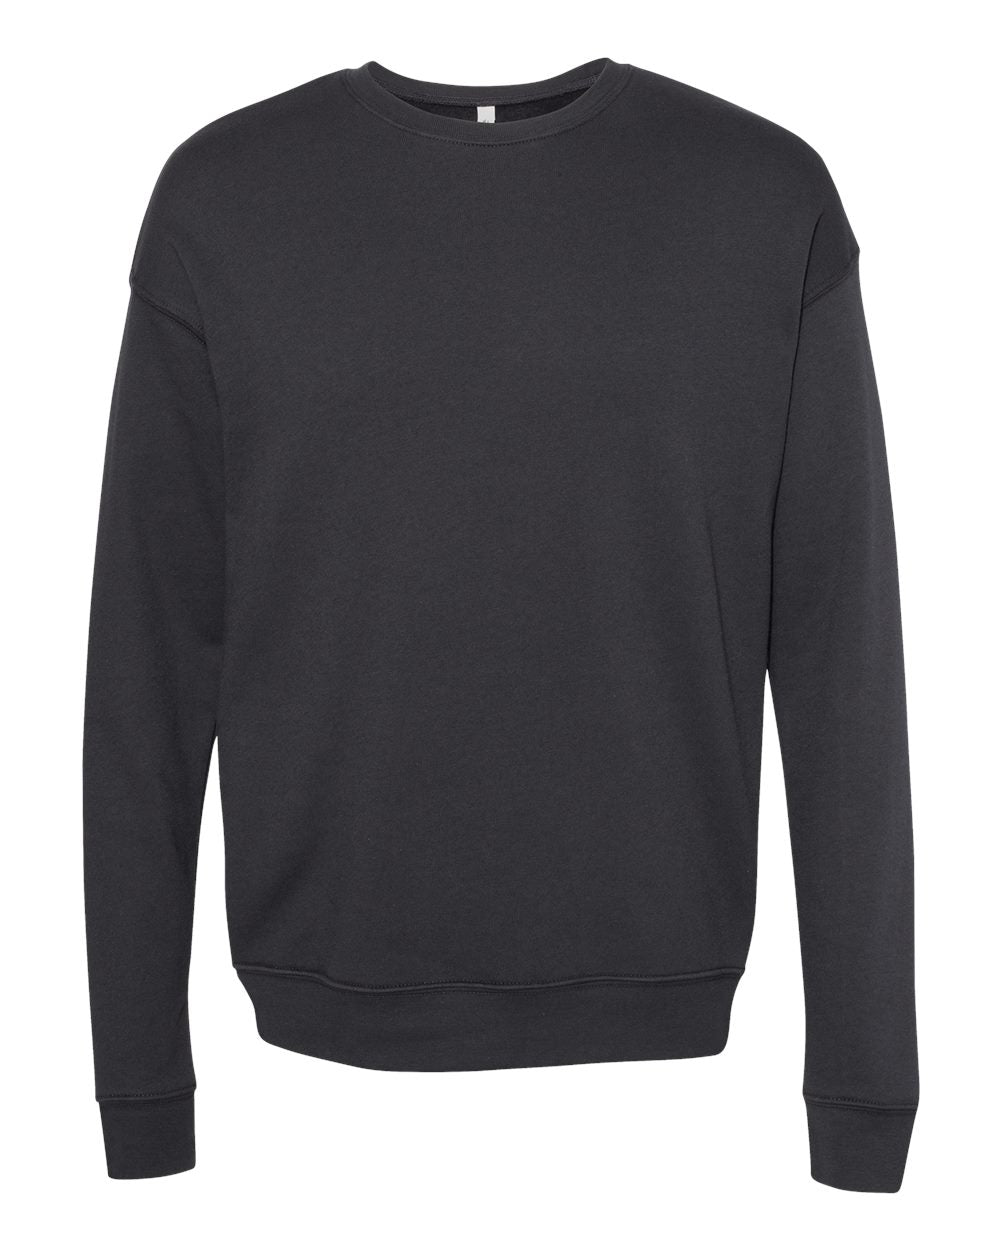 bella+canvas fleece crewneck sweatshirt DTG dark grey